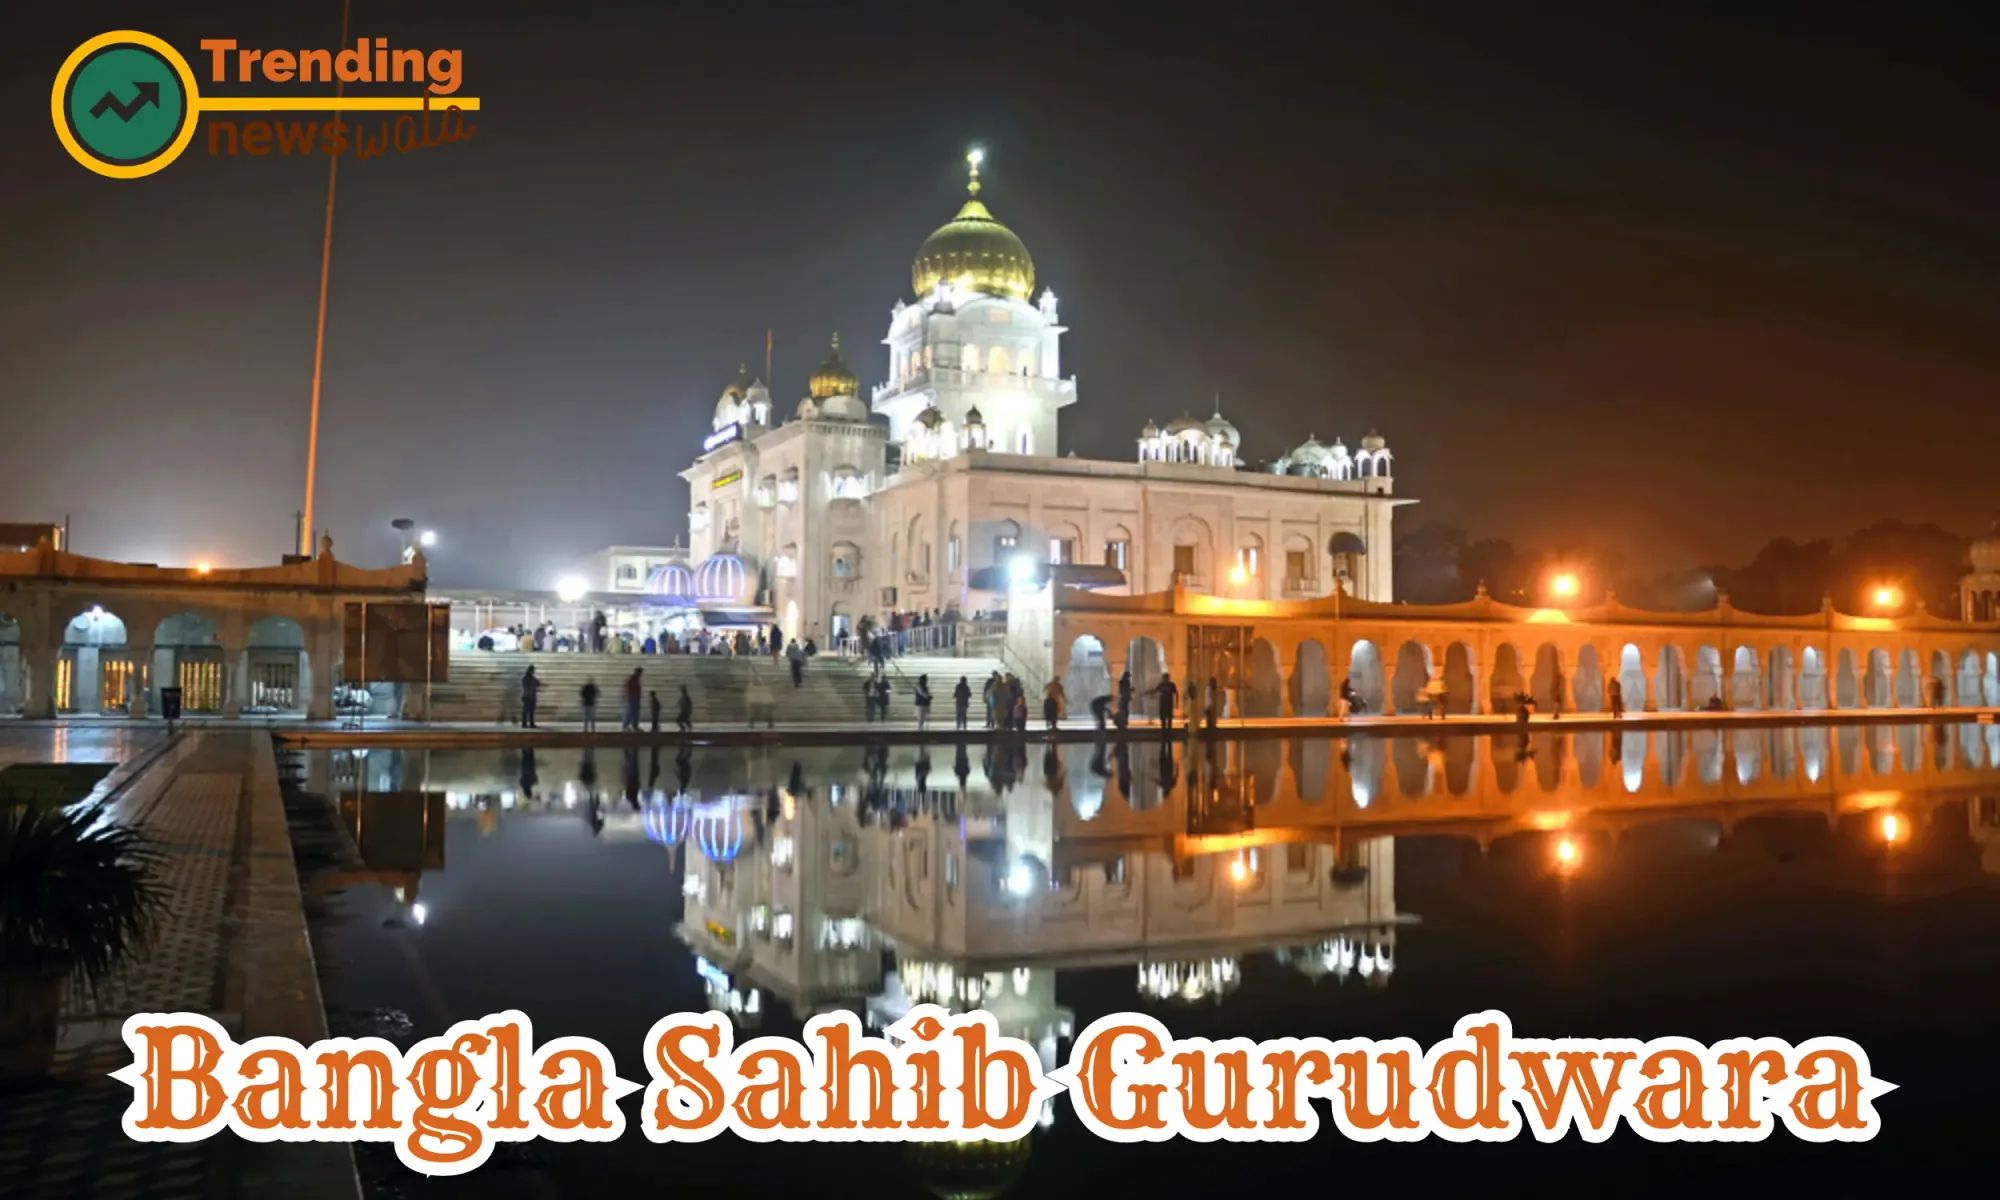 The Bangla Sahib Gurudwara, also known as the Gurdwara Bangla Sahib, is a prominent Sikh gurdwara